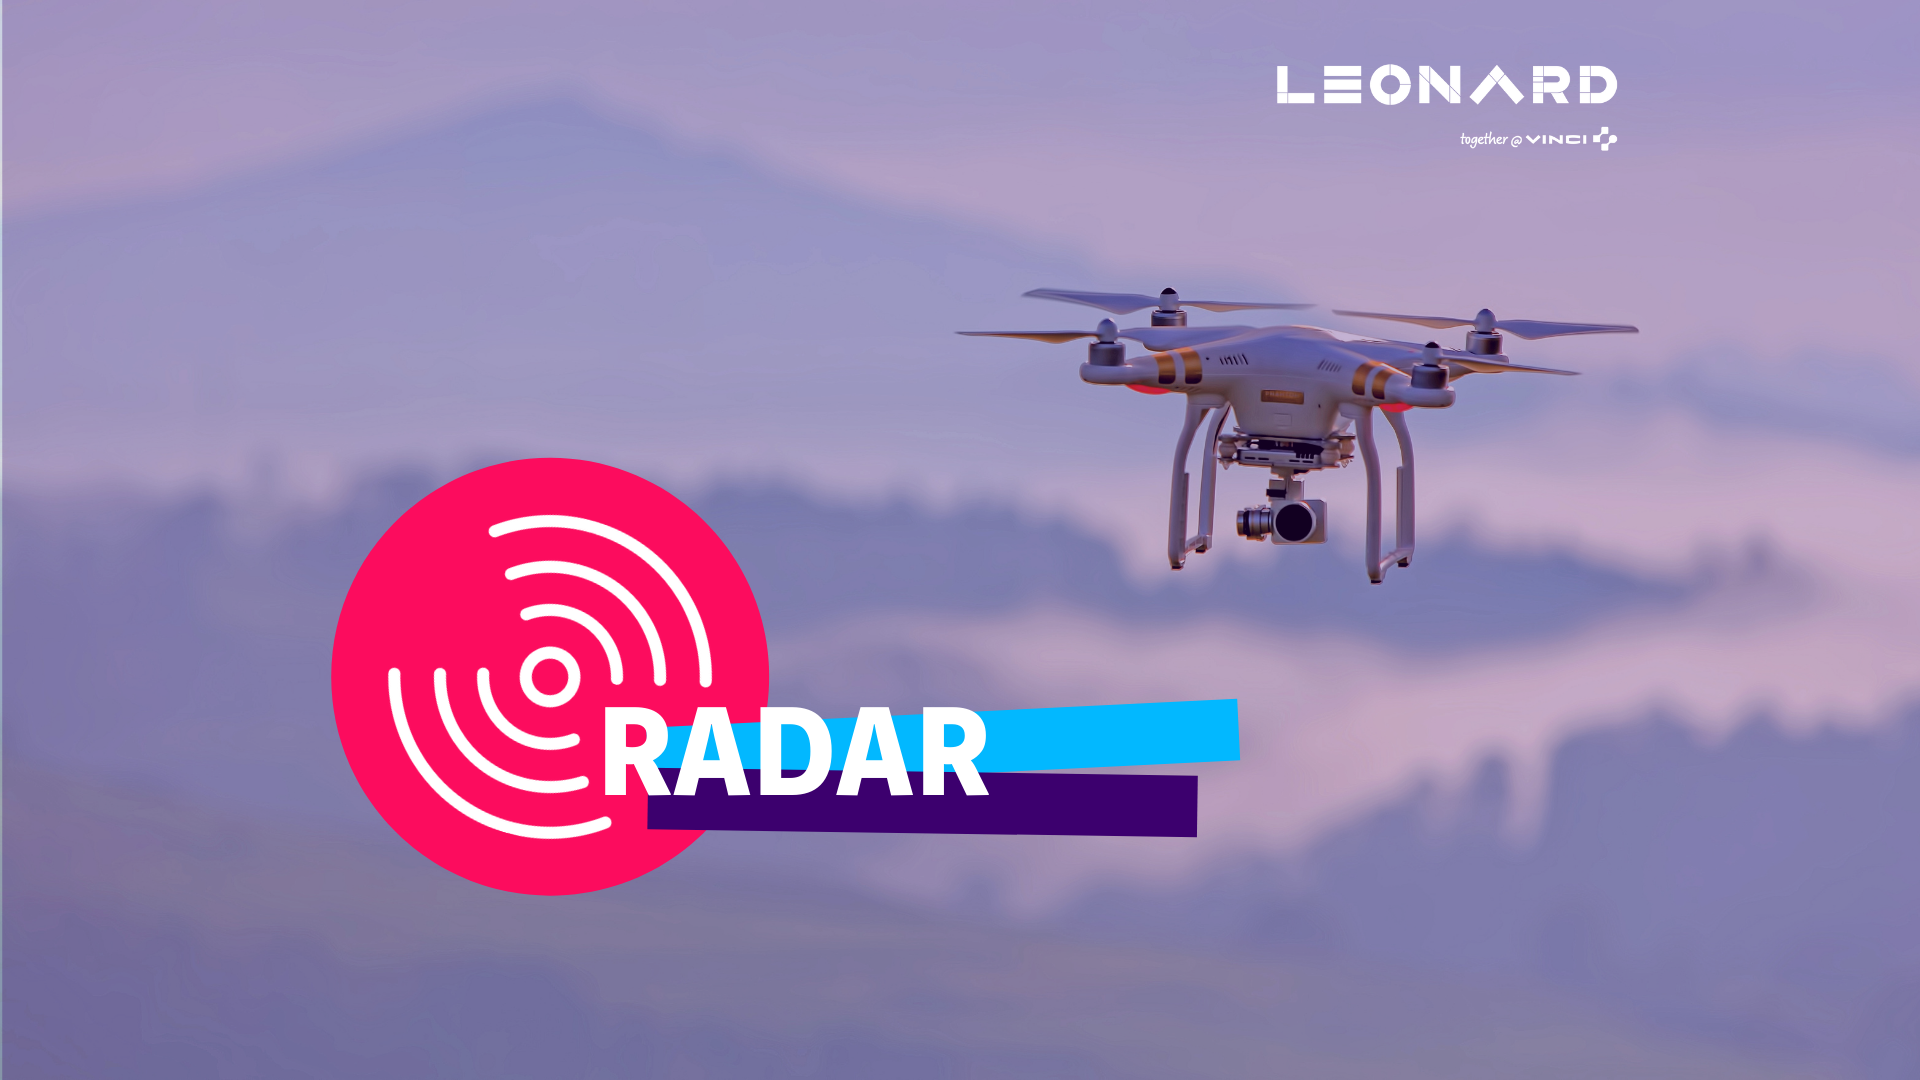 Radar – Notre sélection de business innovants #67